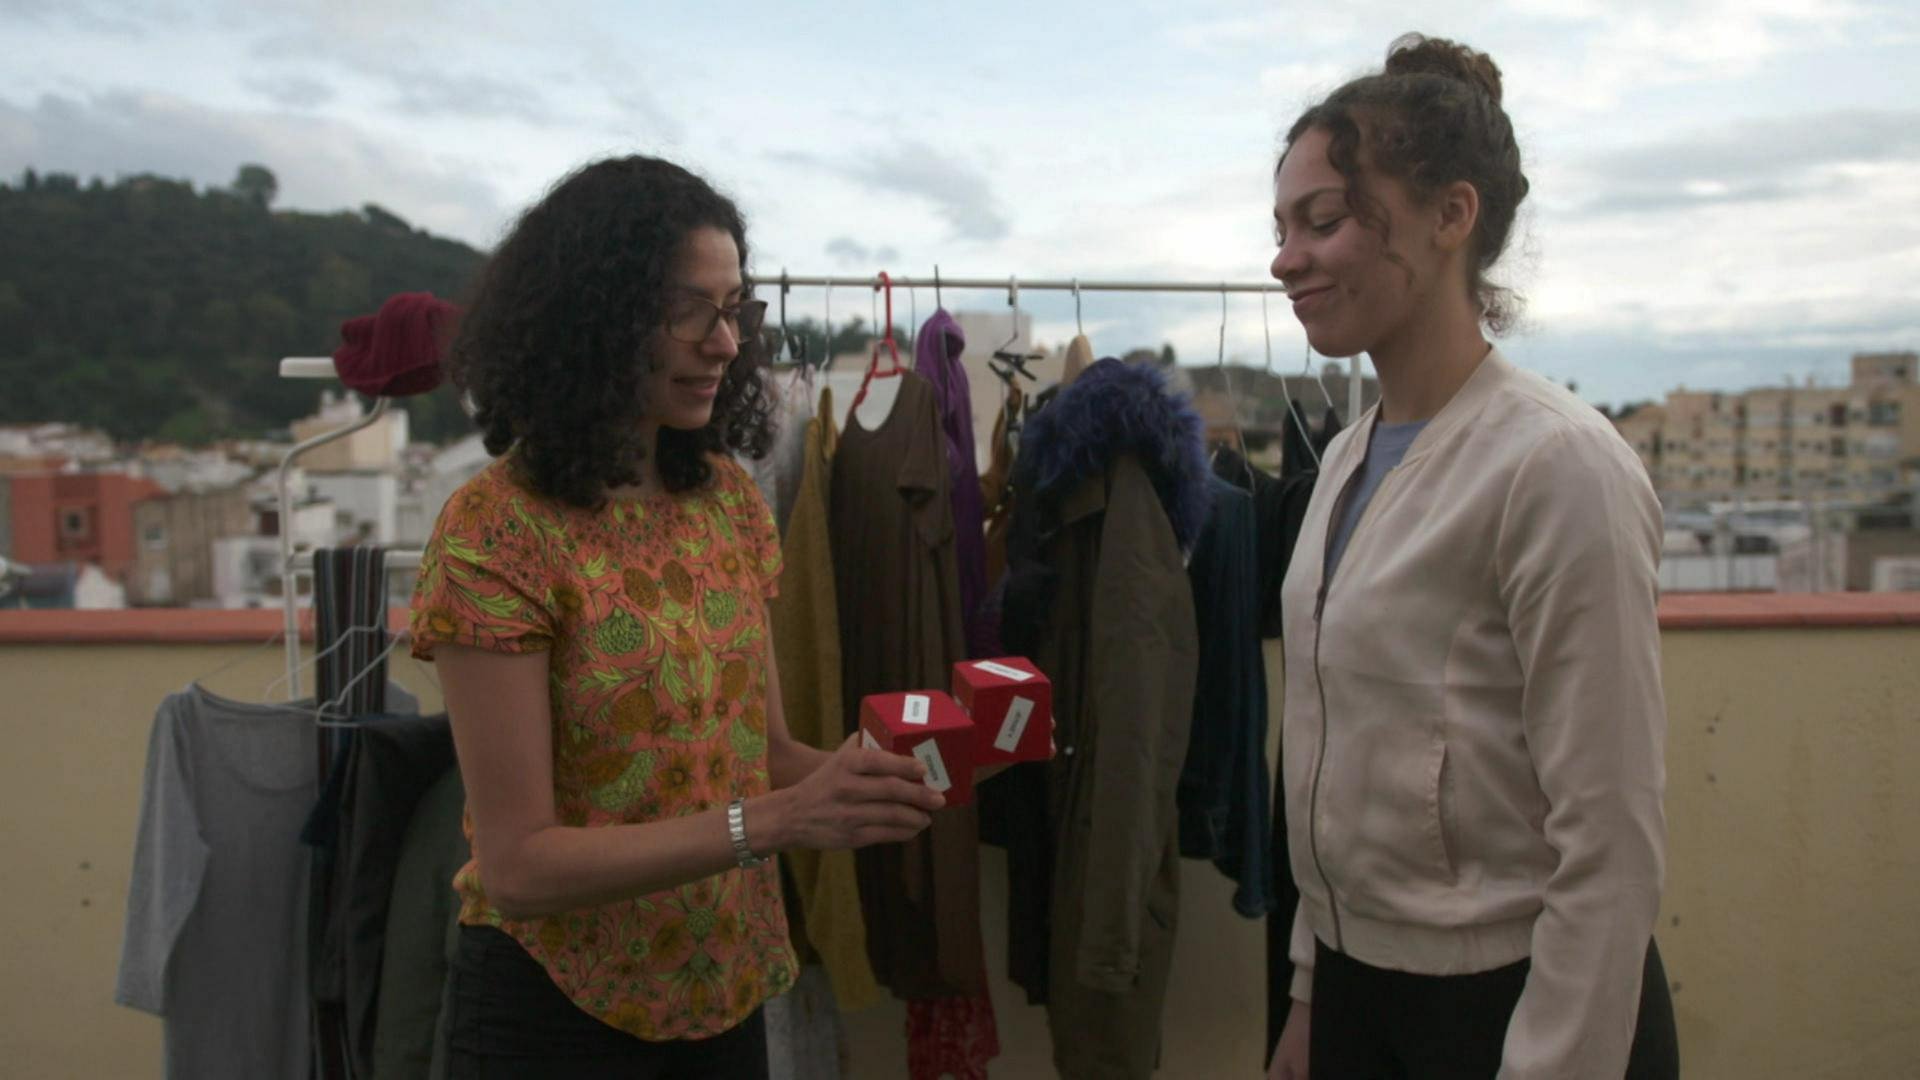 Zwei Frauen stehen auf einer Terasse vor einer Kleiderstange. Die eine Frau hält der anderen zwei rote Würfel entgegen. (Foto: WDR)